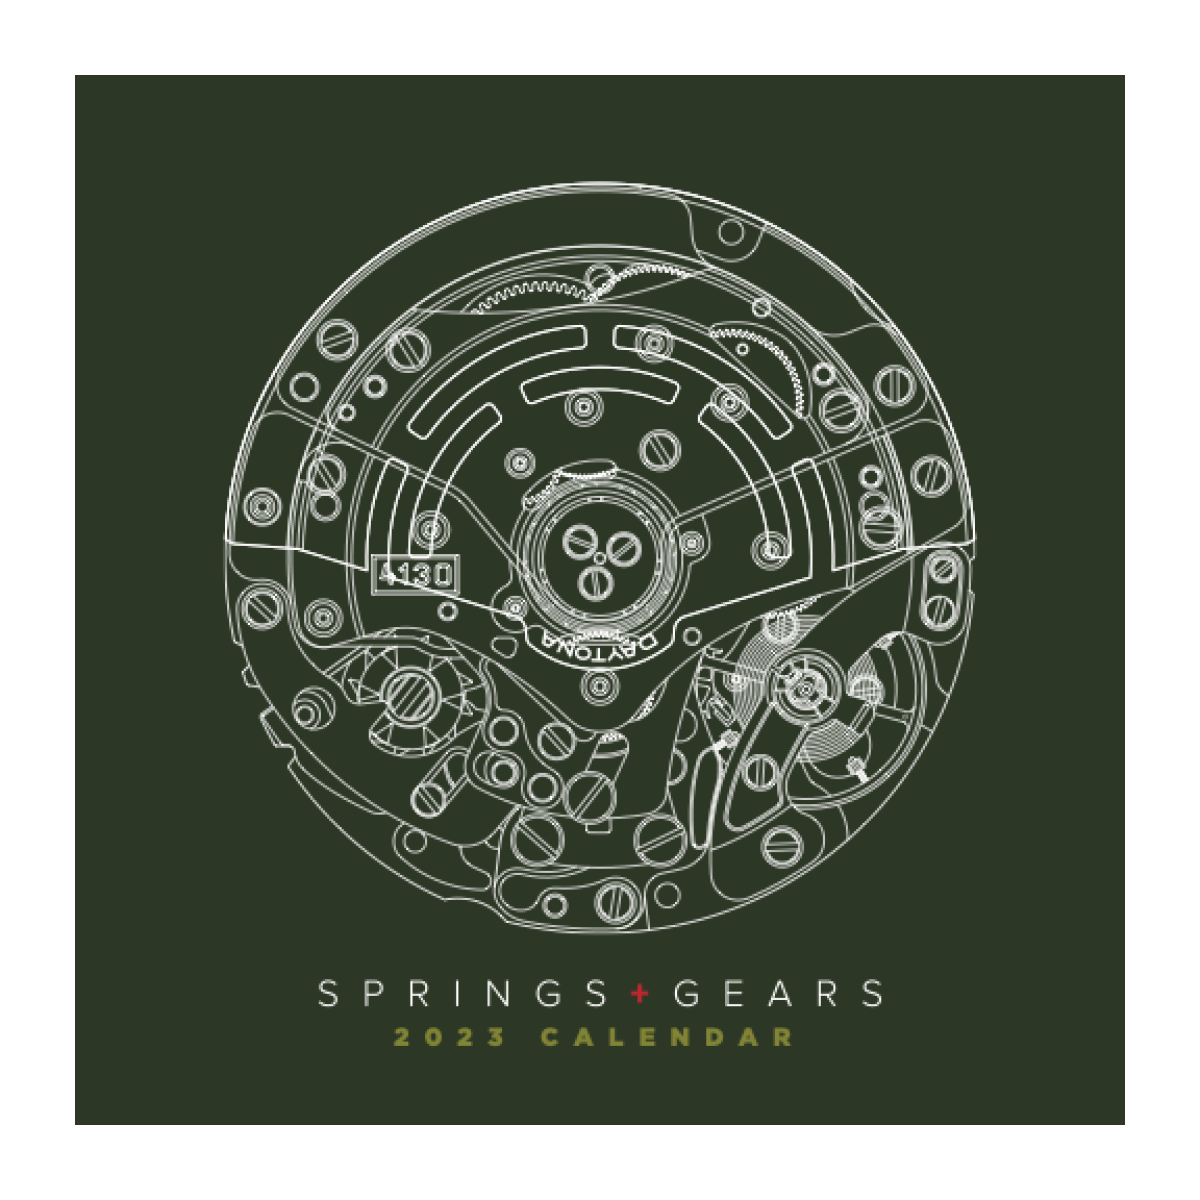 Springs+Gears 2023 Calendar